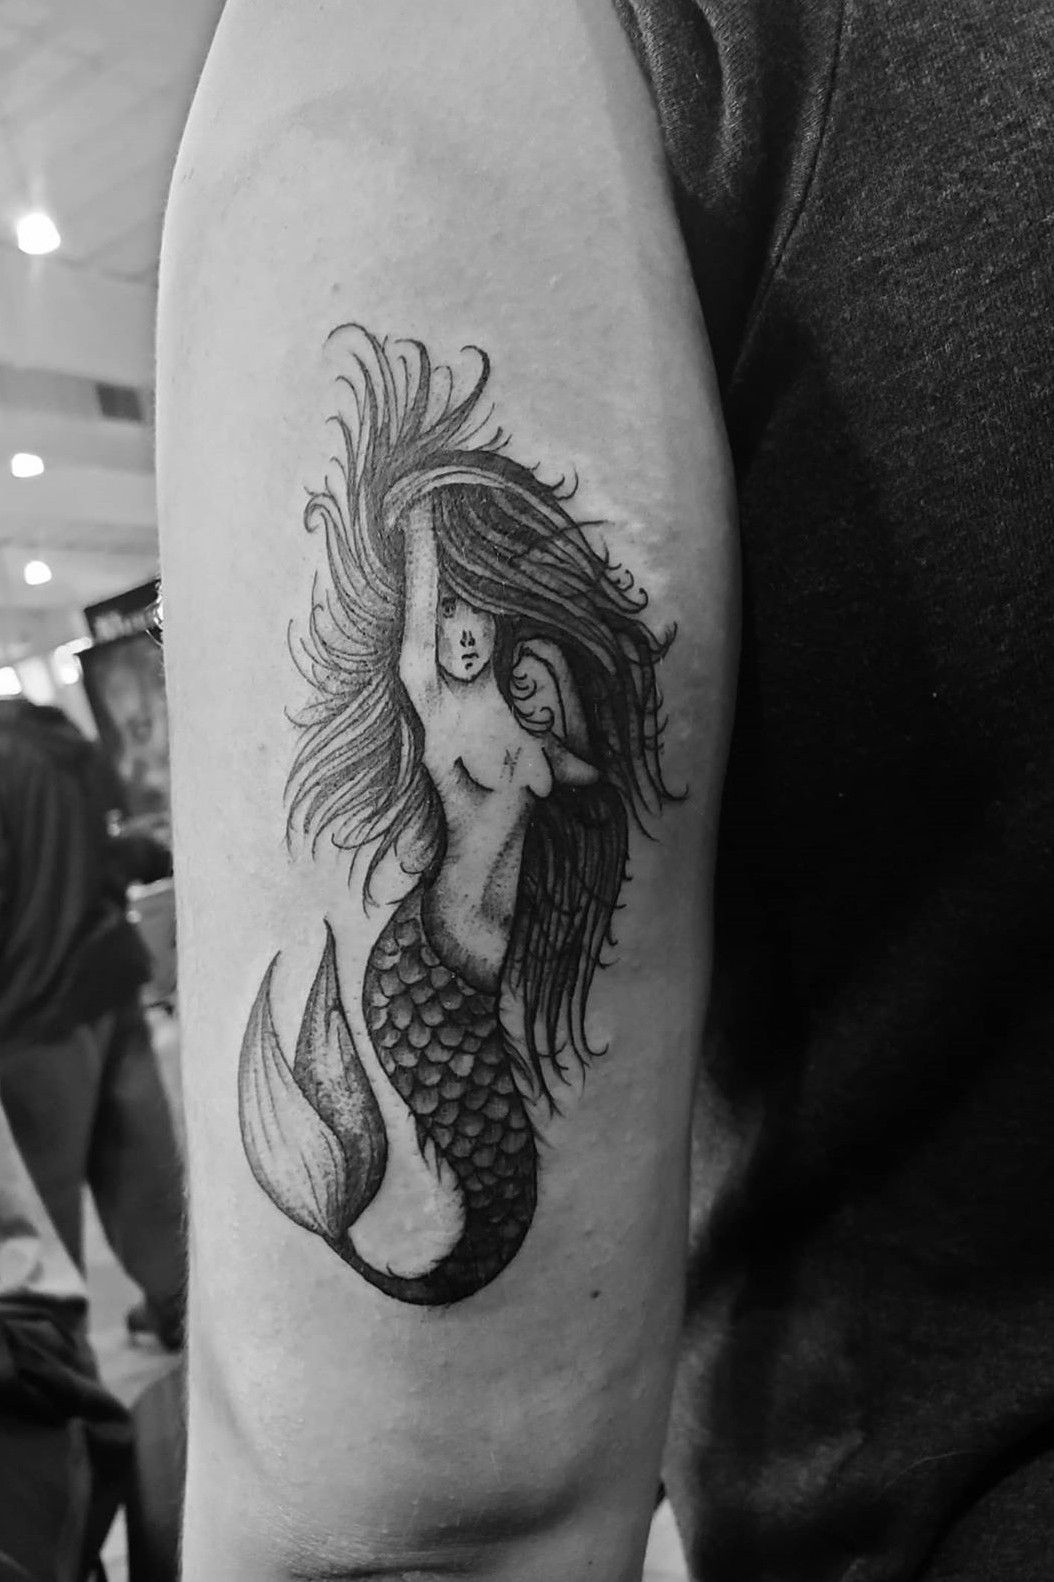 Ramón on Twitter Kévin Plane gt Ariel The Little Mermaid tattoo ink  art httpstco67zE12KJLq  Twitter